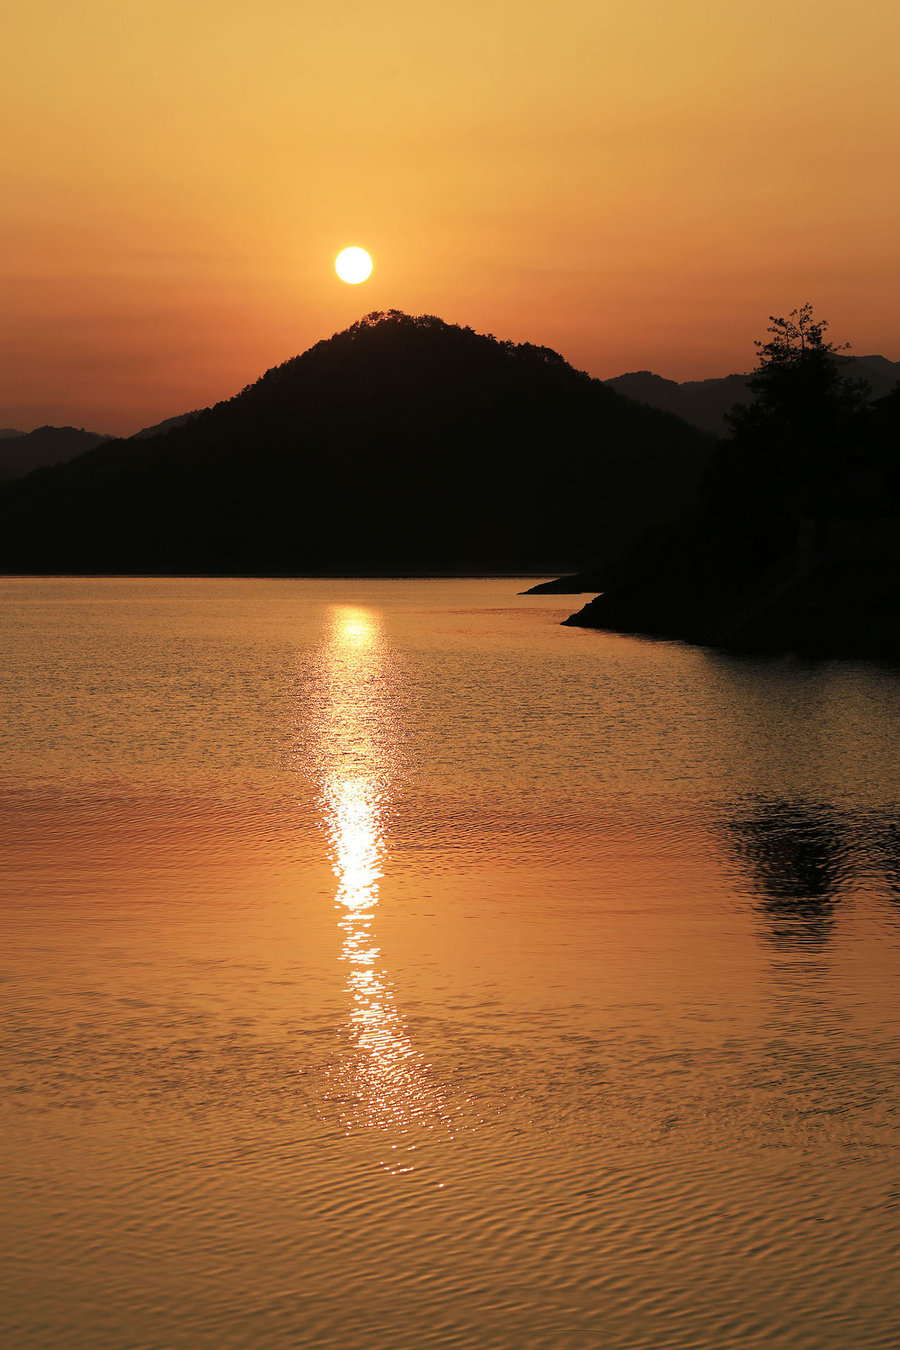 夕阳的照片山水风景图片